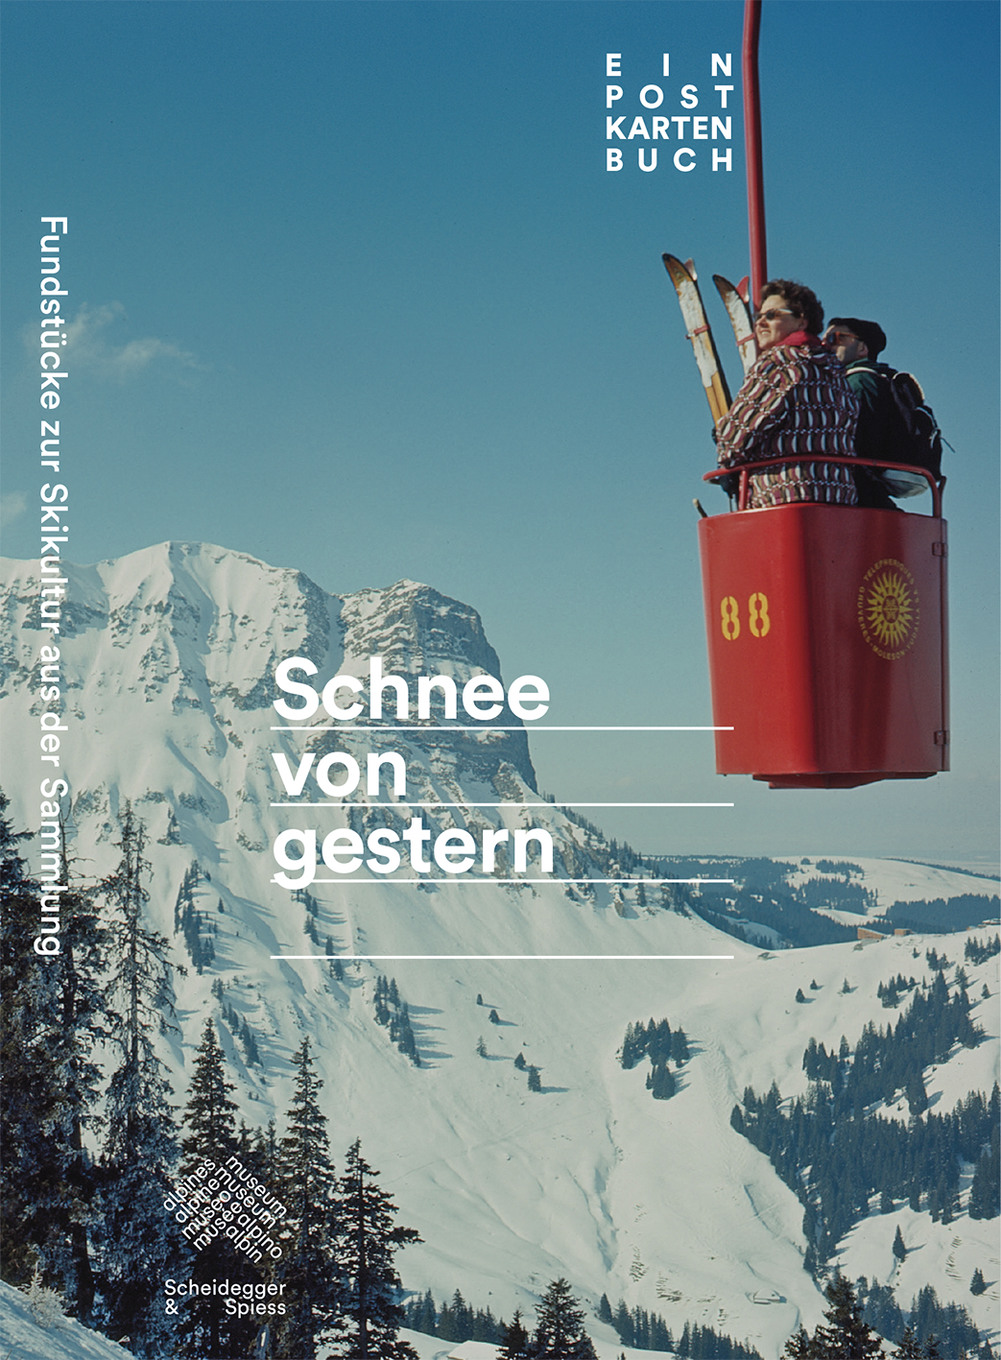 Schweizer Skikultur im Postkartenformat